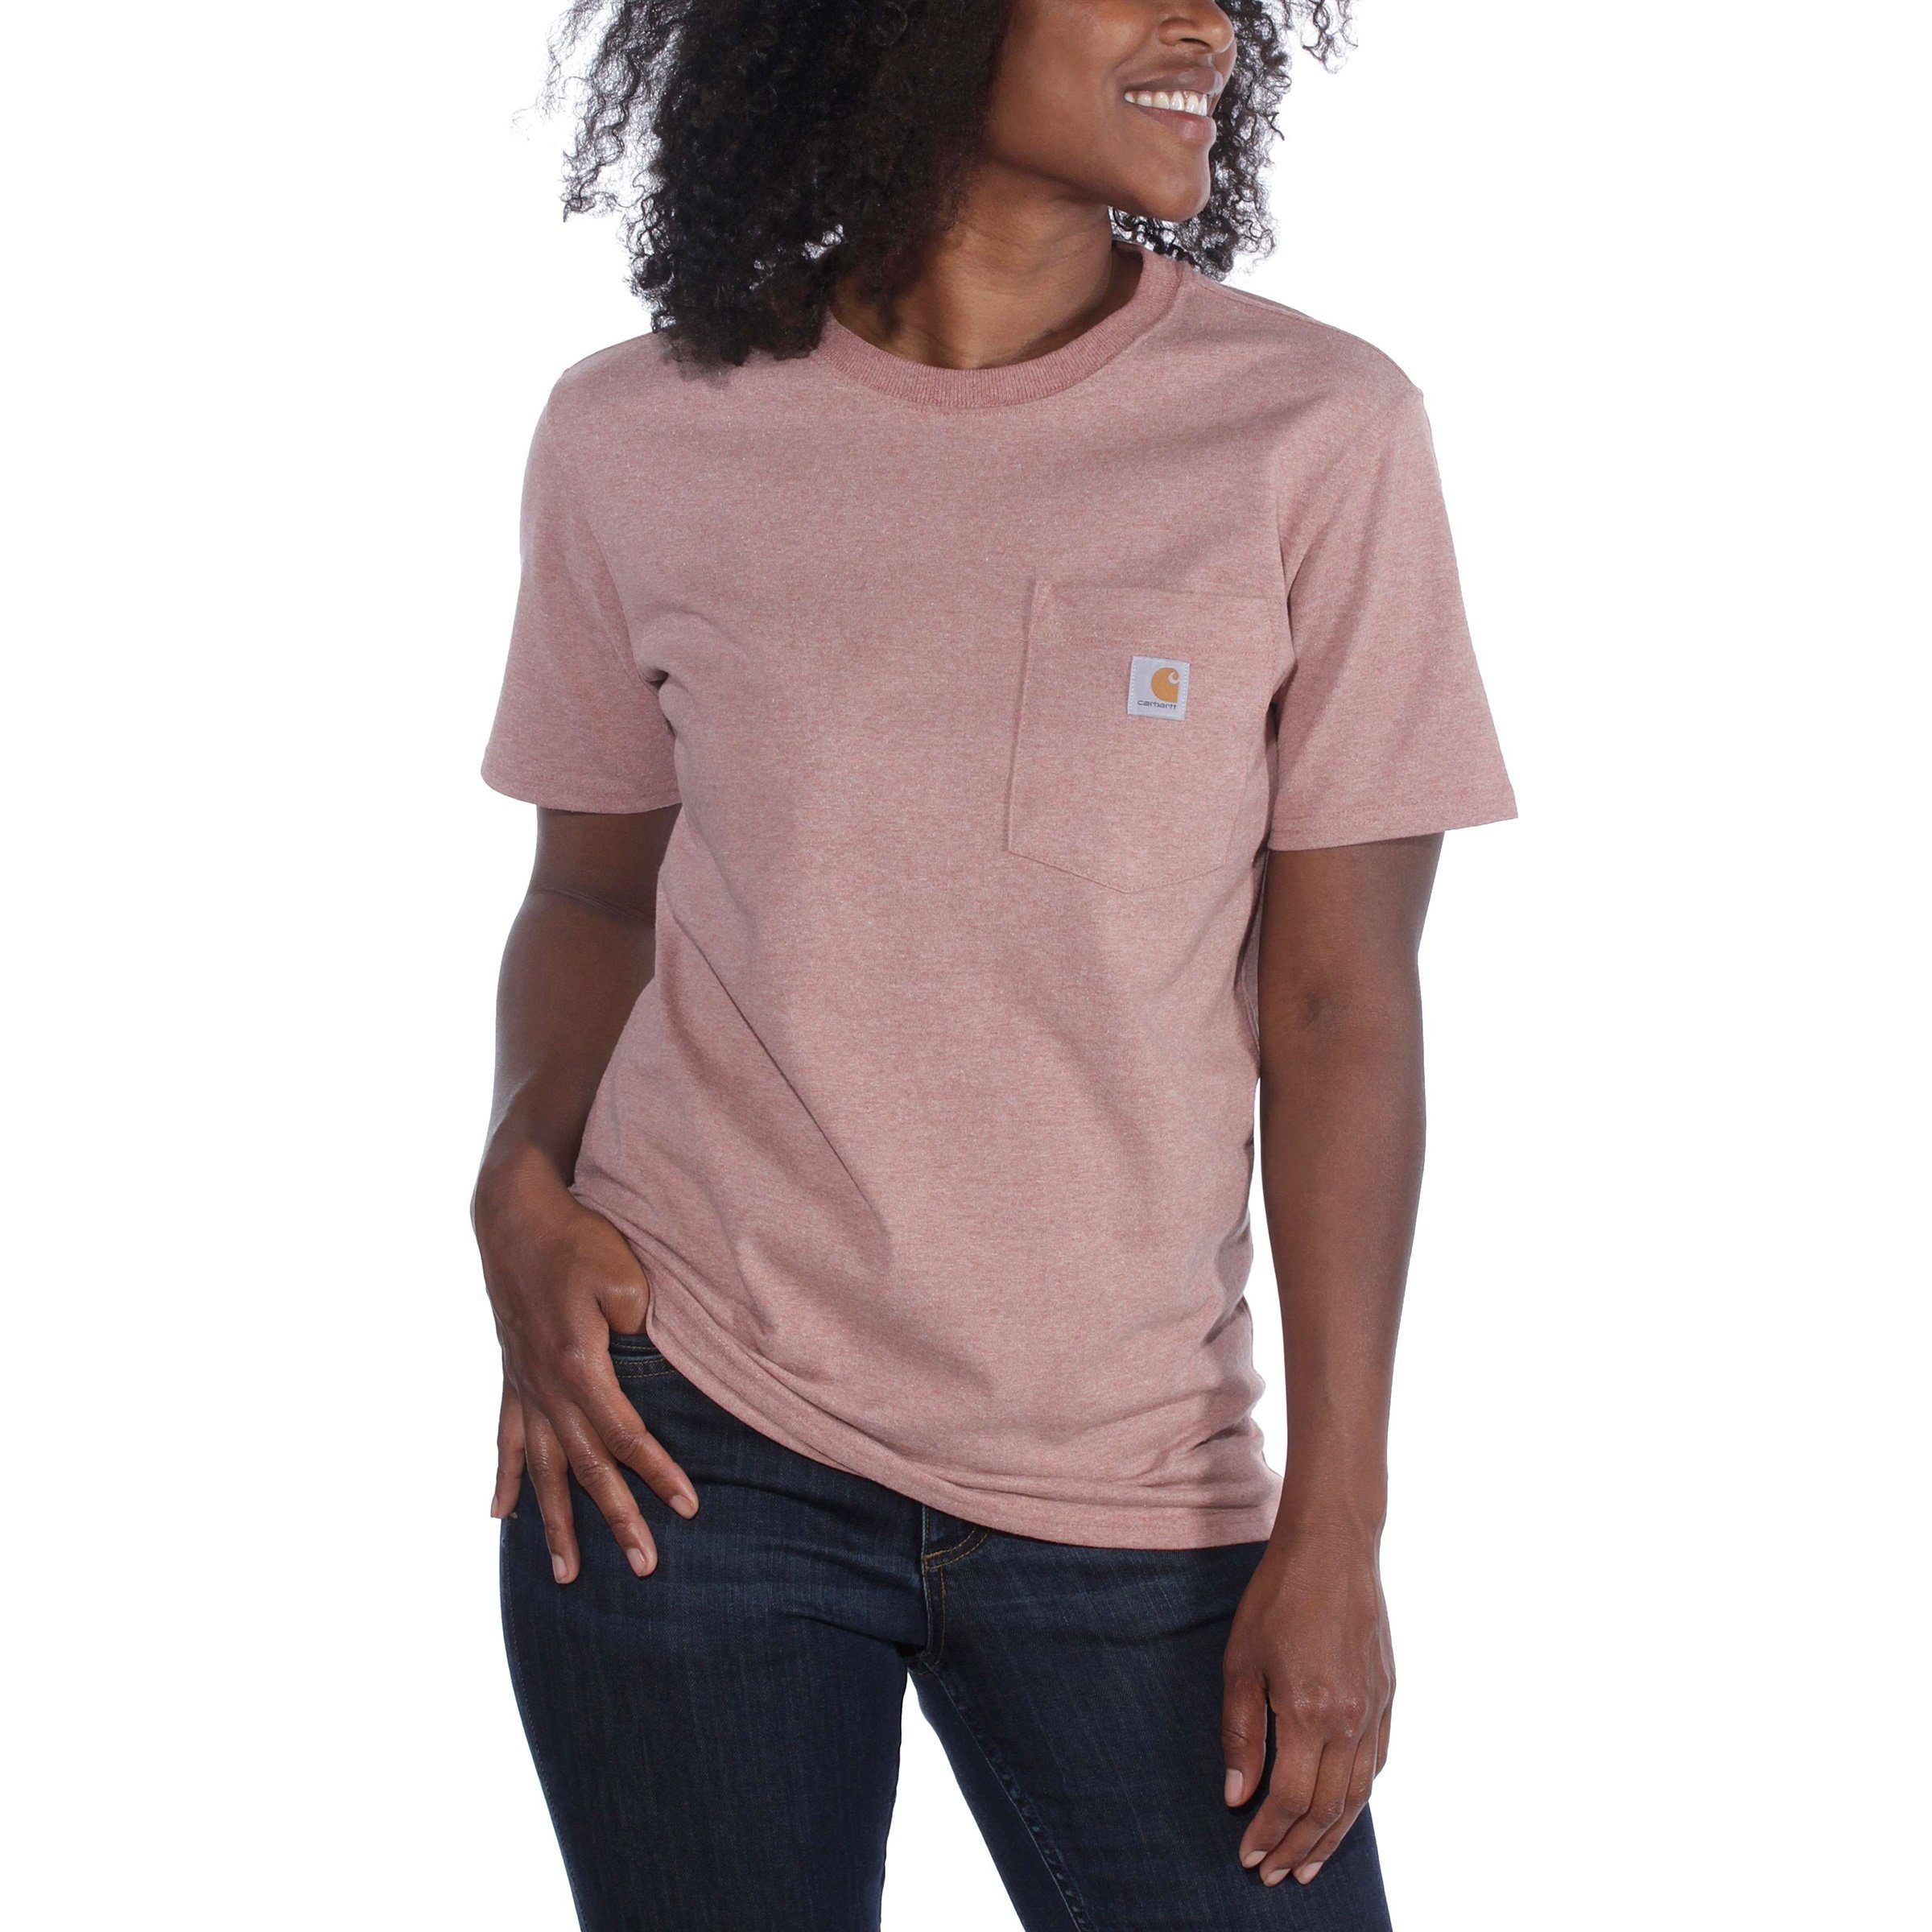 T-Shirt T-Shirt Adult rose Heavyweight ash Short-Sleeve Carhartt Damen Fit Pocket Loose Carhartt